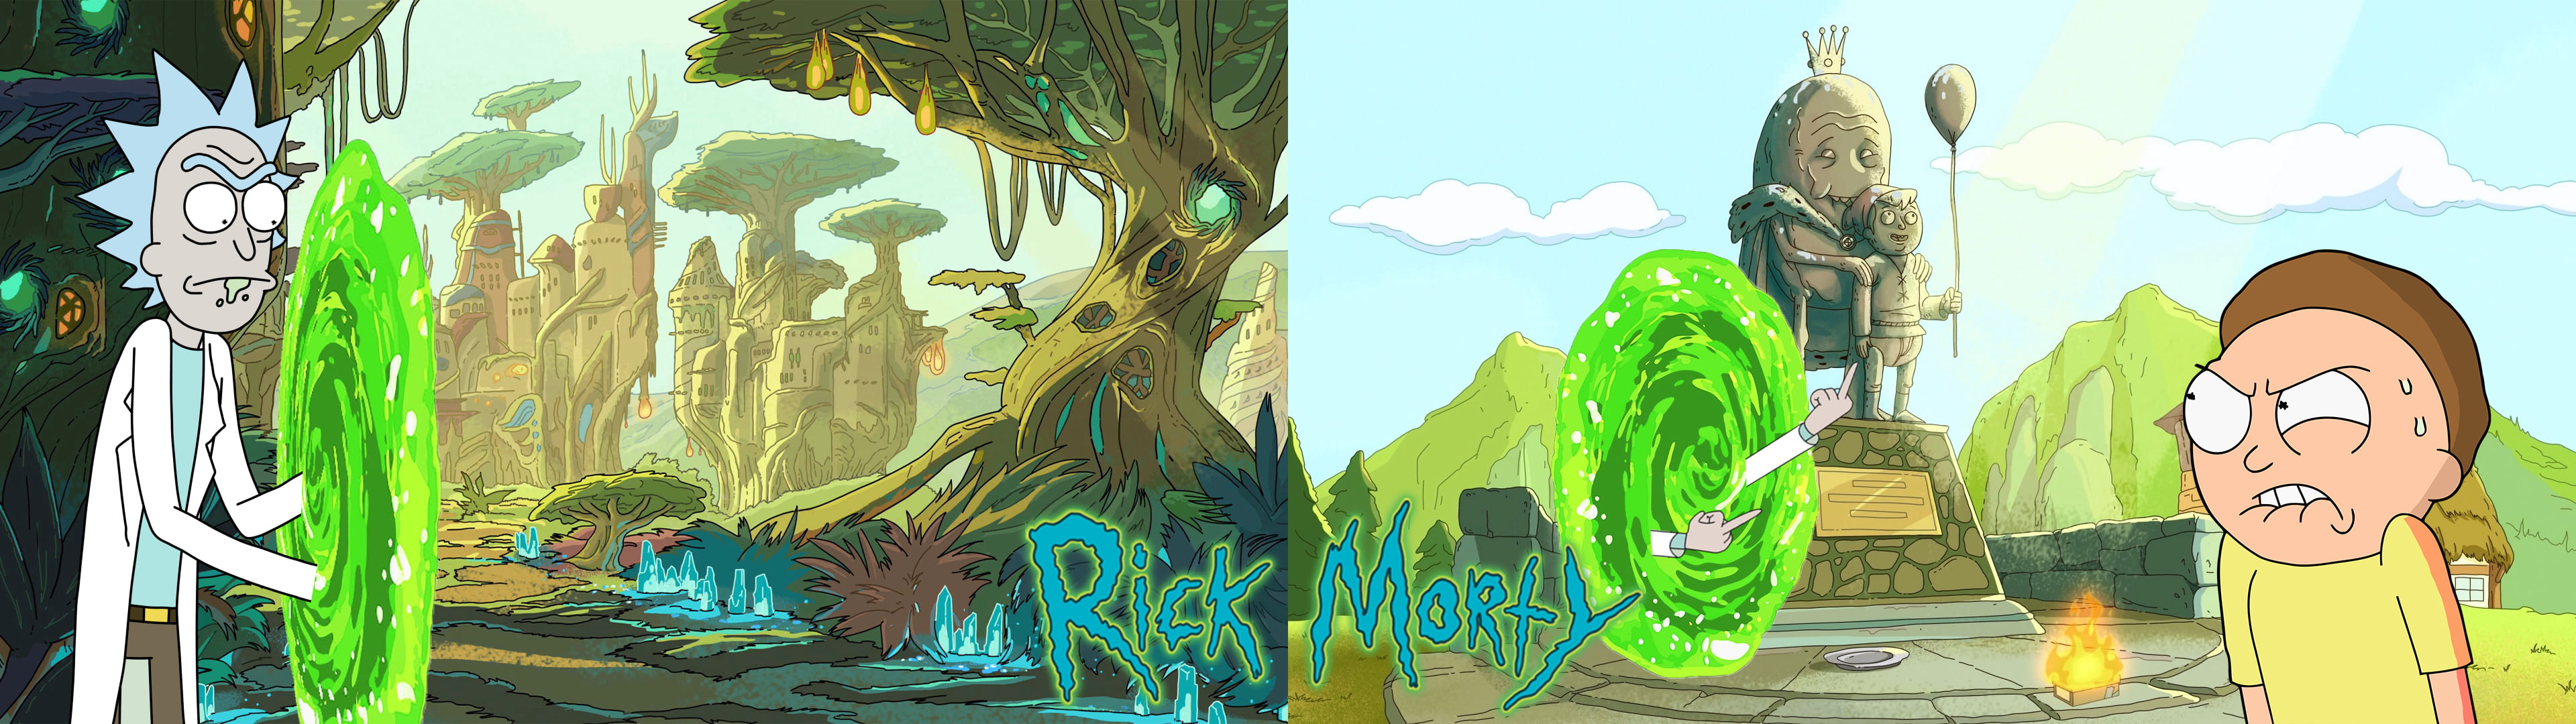 Rick and Morty, dual monitors, dual display